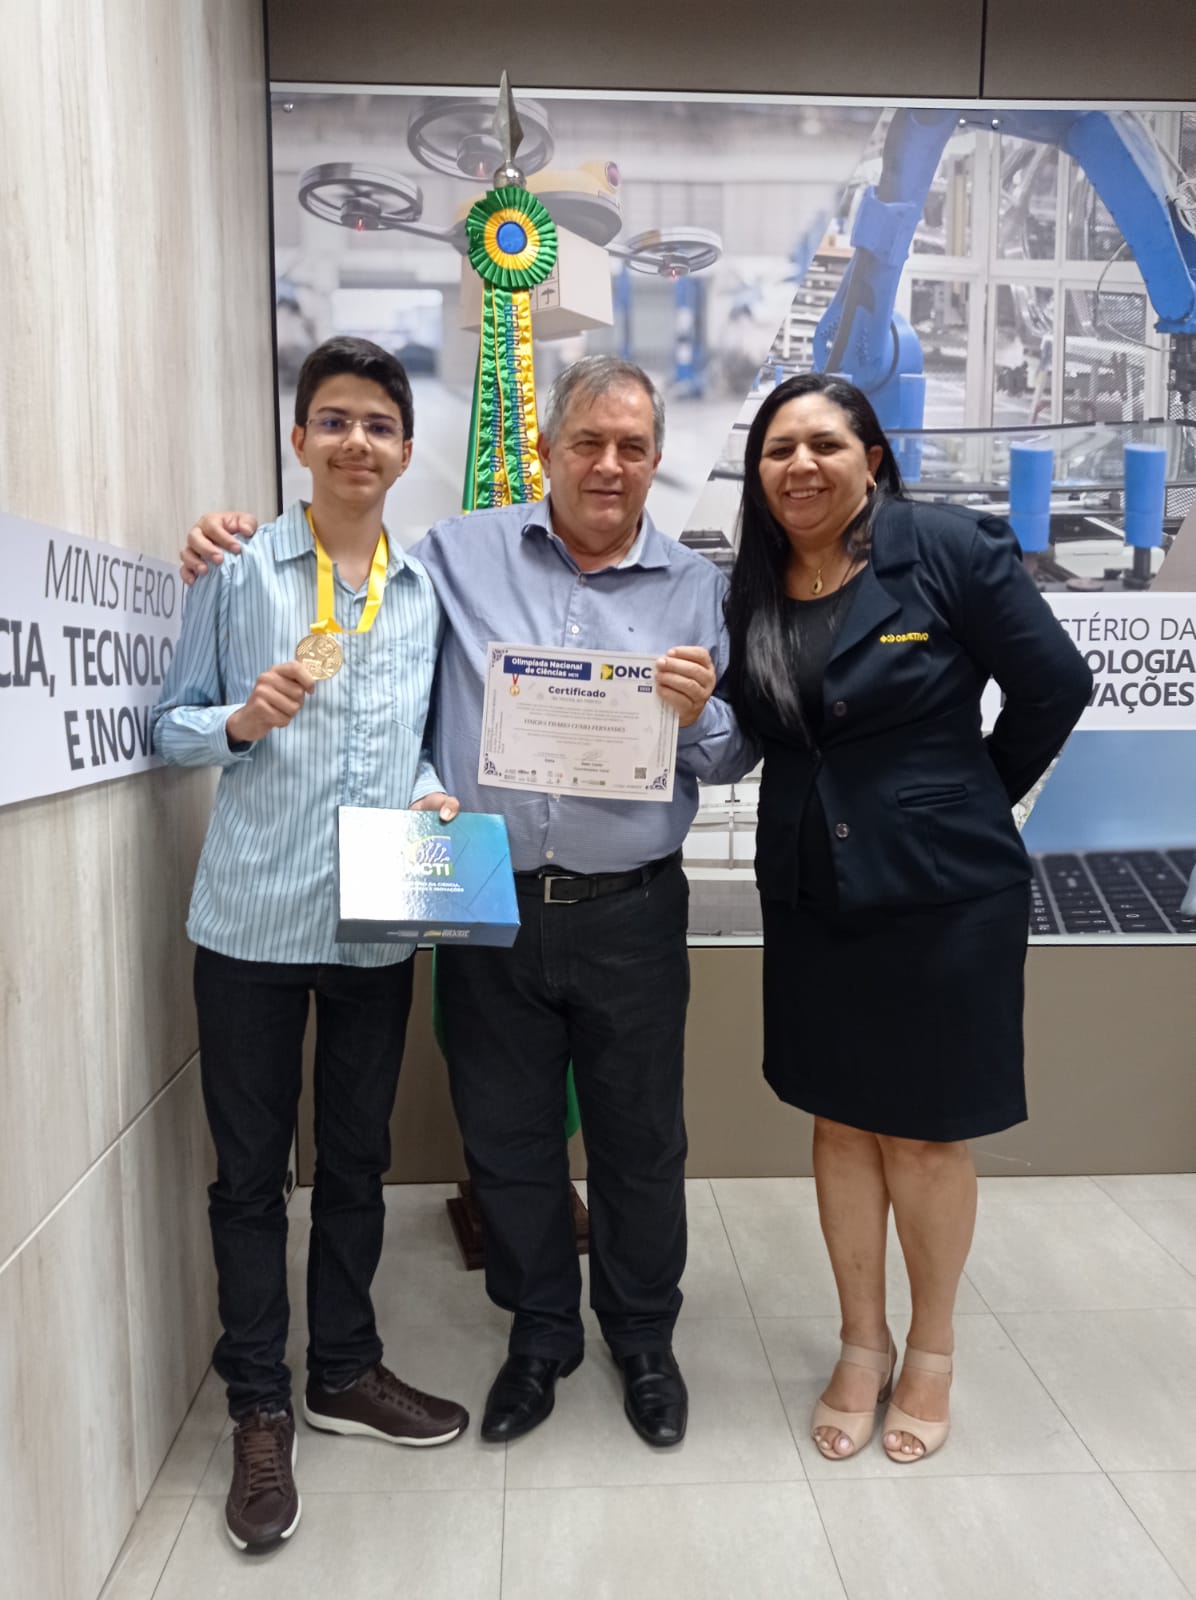 Maior nota do Ceará no 9º ano: aluno Objetivo é o único do interior do estado a ser premiado no Ministério da Ciência, Tecnologia e Inovação.